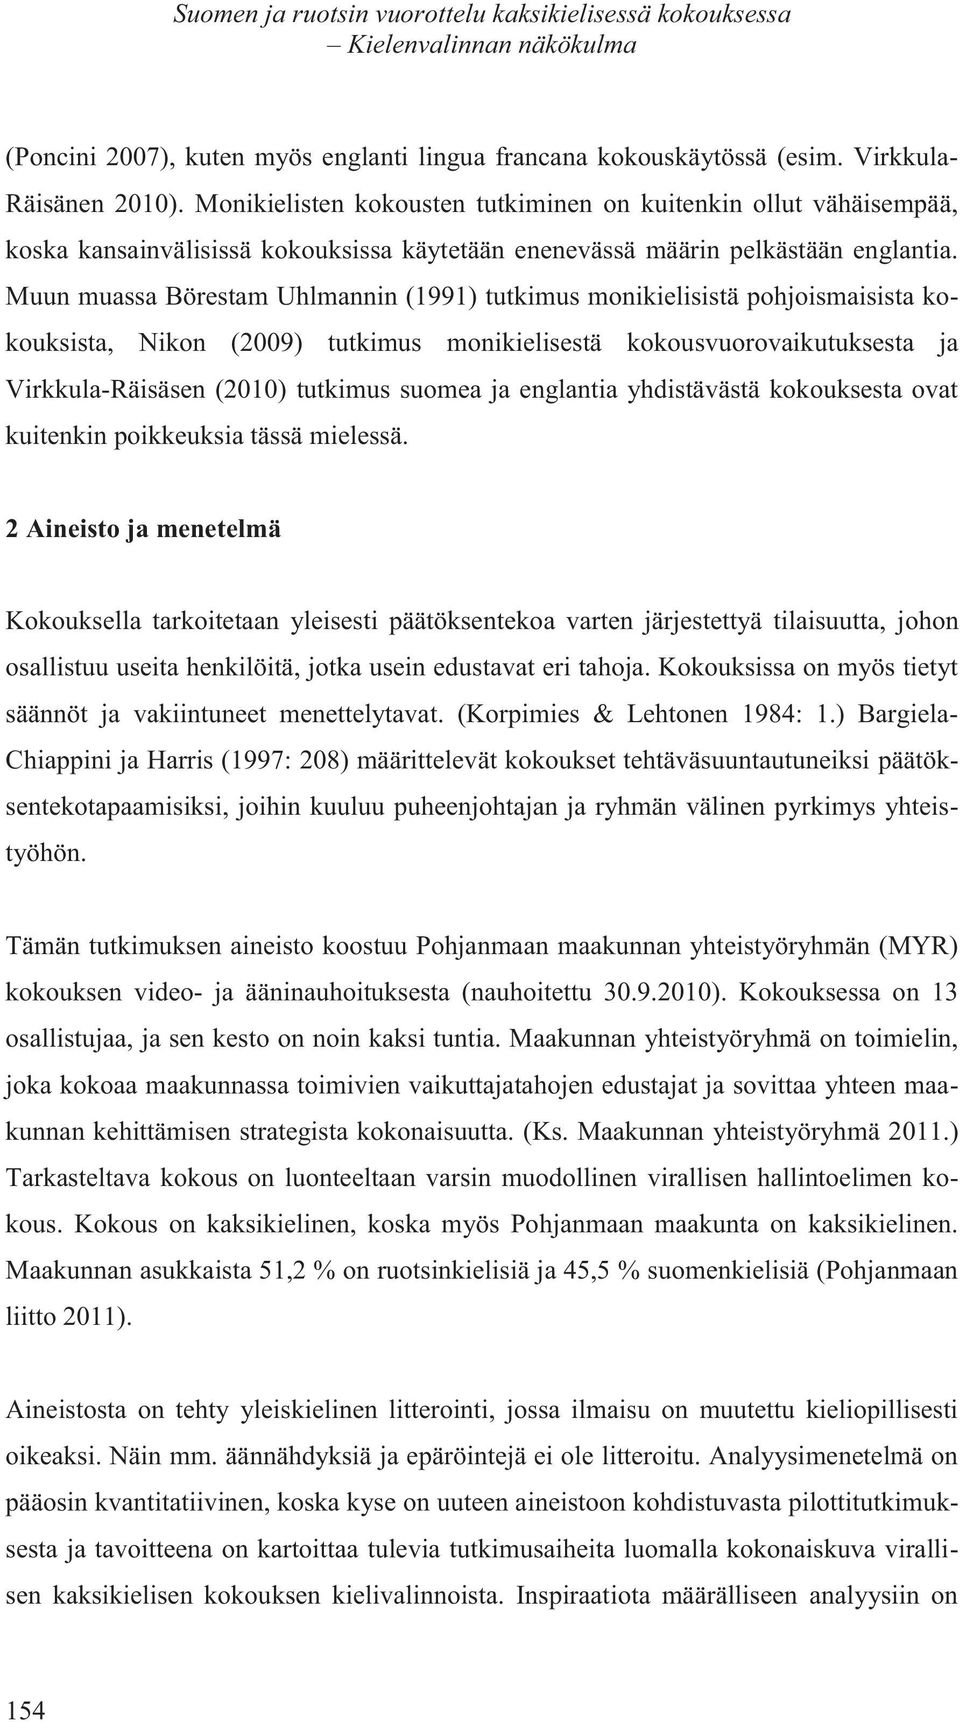 Muun muassa Börestam Uhlmannin (1991) tutkimus monikielisistä pohjoismaisista kokouksista, Nikon (2009) tutkimus monikielisestä kokousvuorovaikutuksesta ja Virkkula-Räisäsen (2010) tutkimus suomea ja